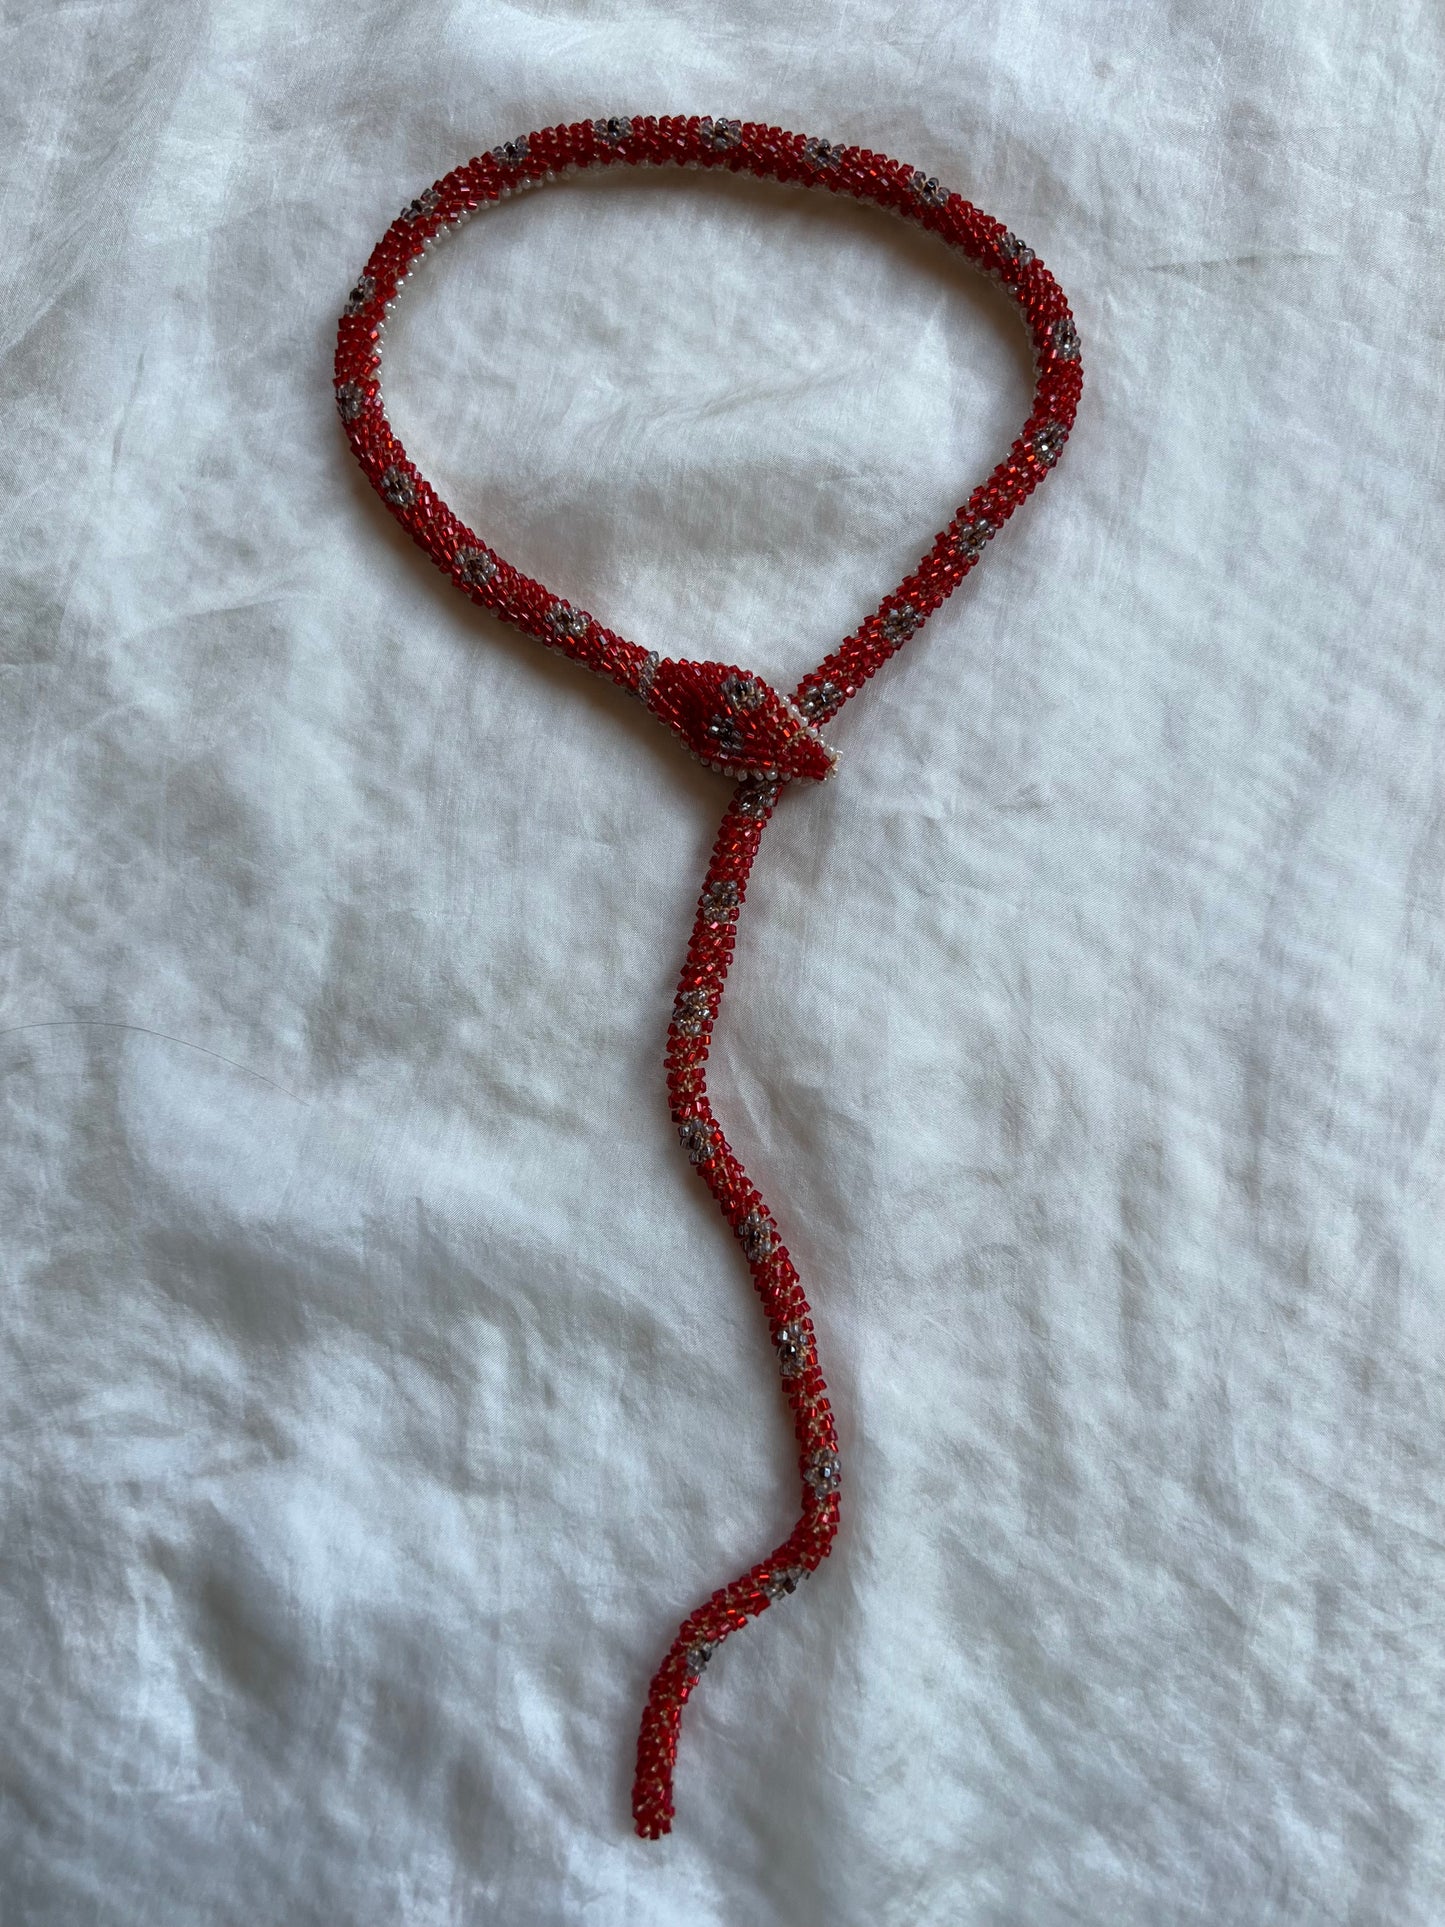 SALE! Bead Crochet Snake | Ruby